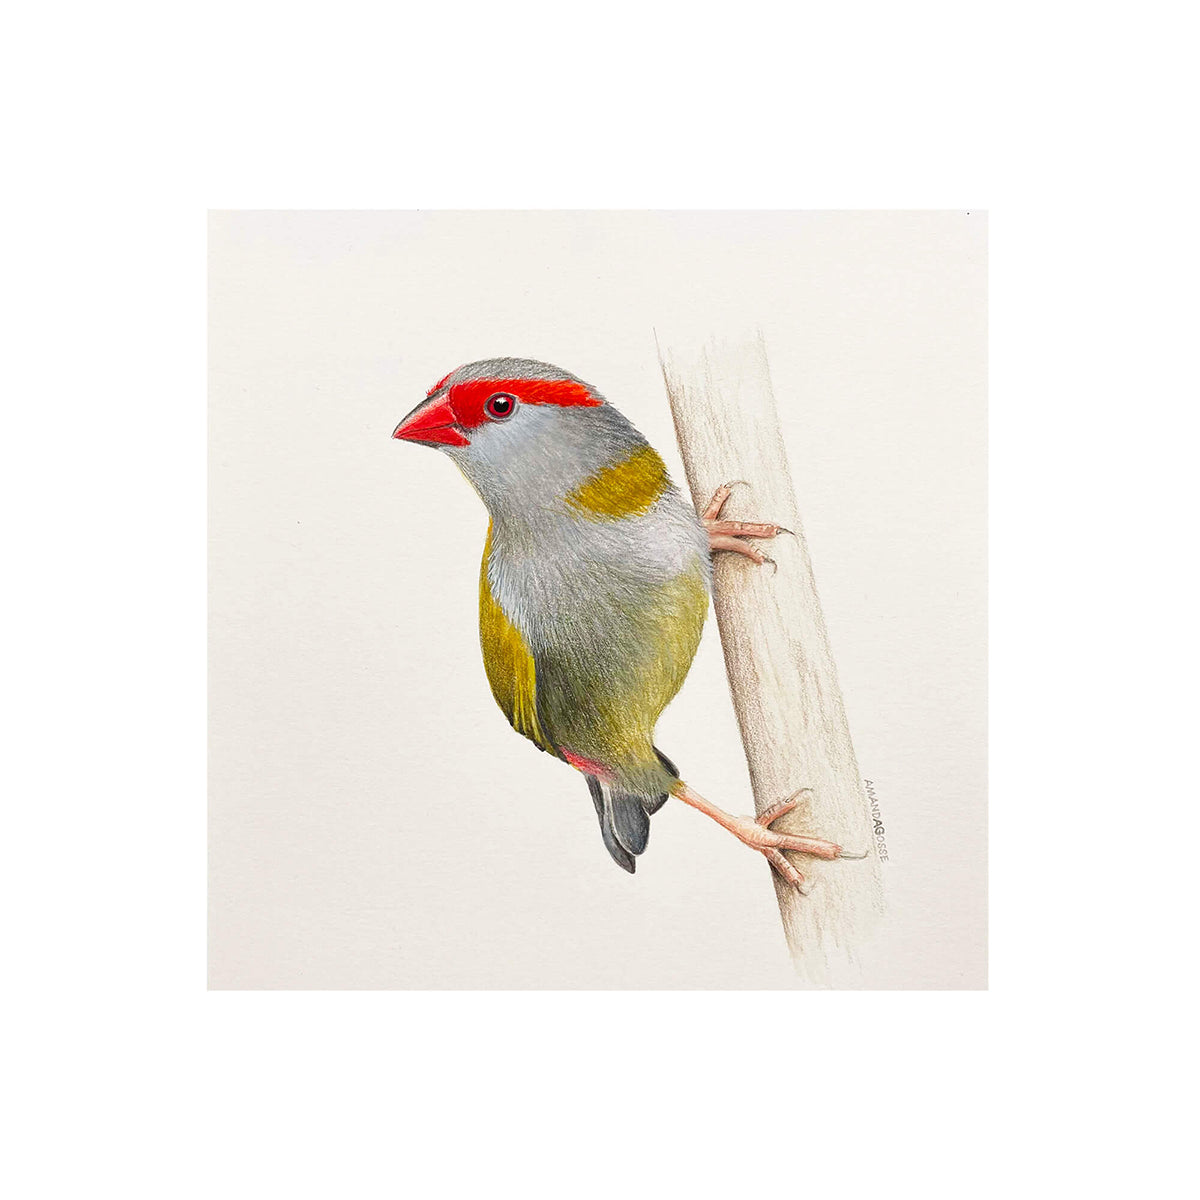 Fine art giclée print of a Red-browed Finch artwork by bird artist Amanda Gosse